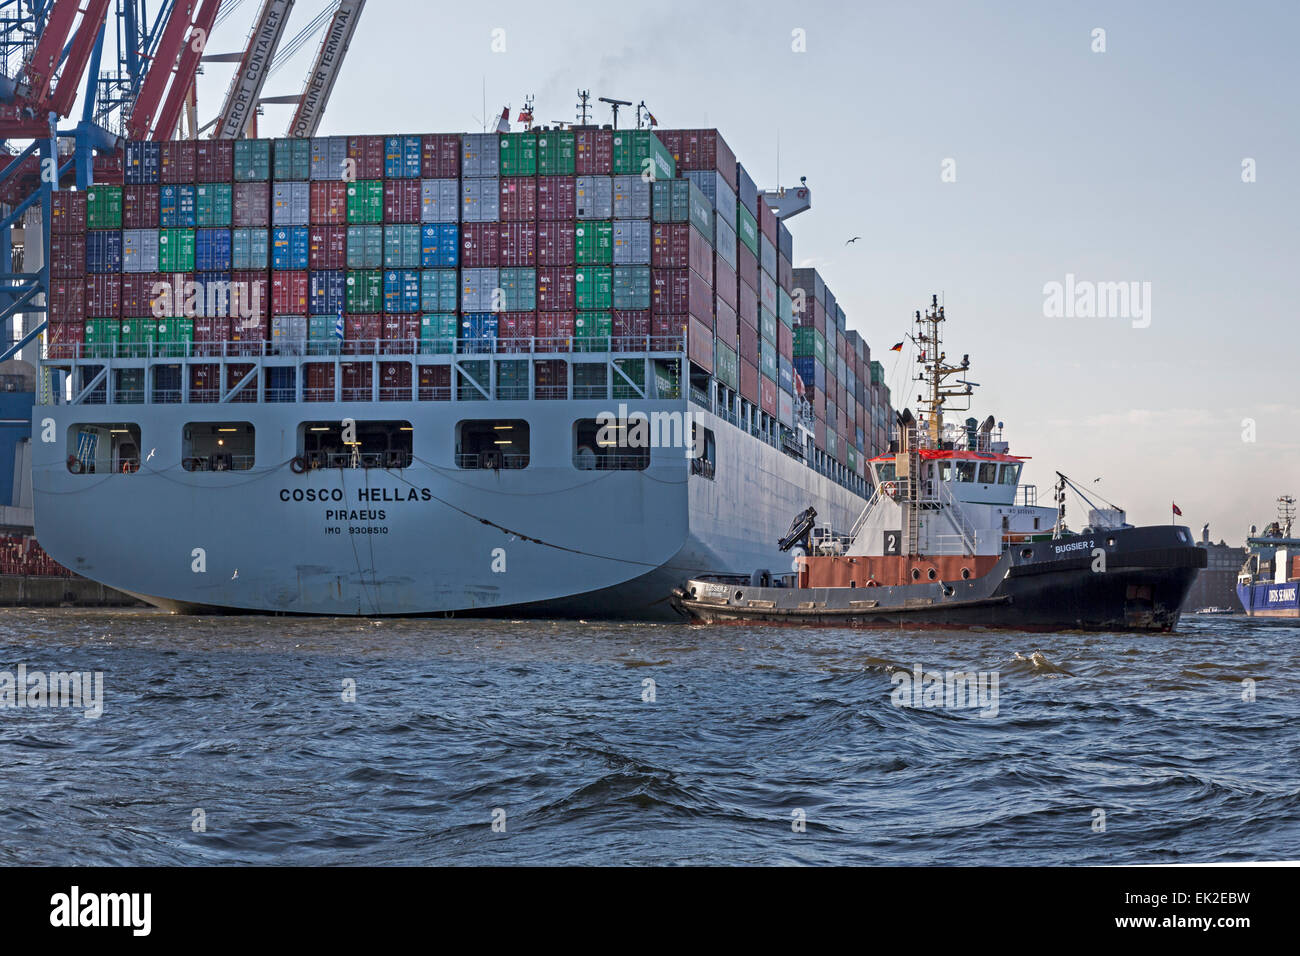 Cosco Containerschiff Hellas wird von Schlepper gezogen, Hamburger Hafen, Hamburgo, Alemania, Europa / Containership Cosco Hel Foto de stock